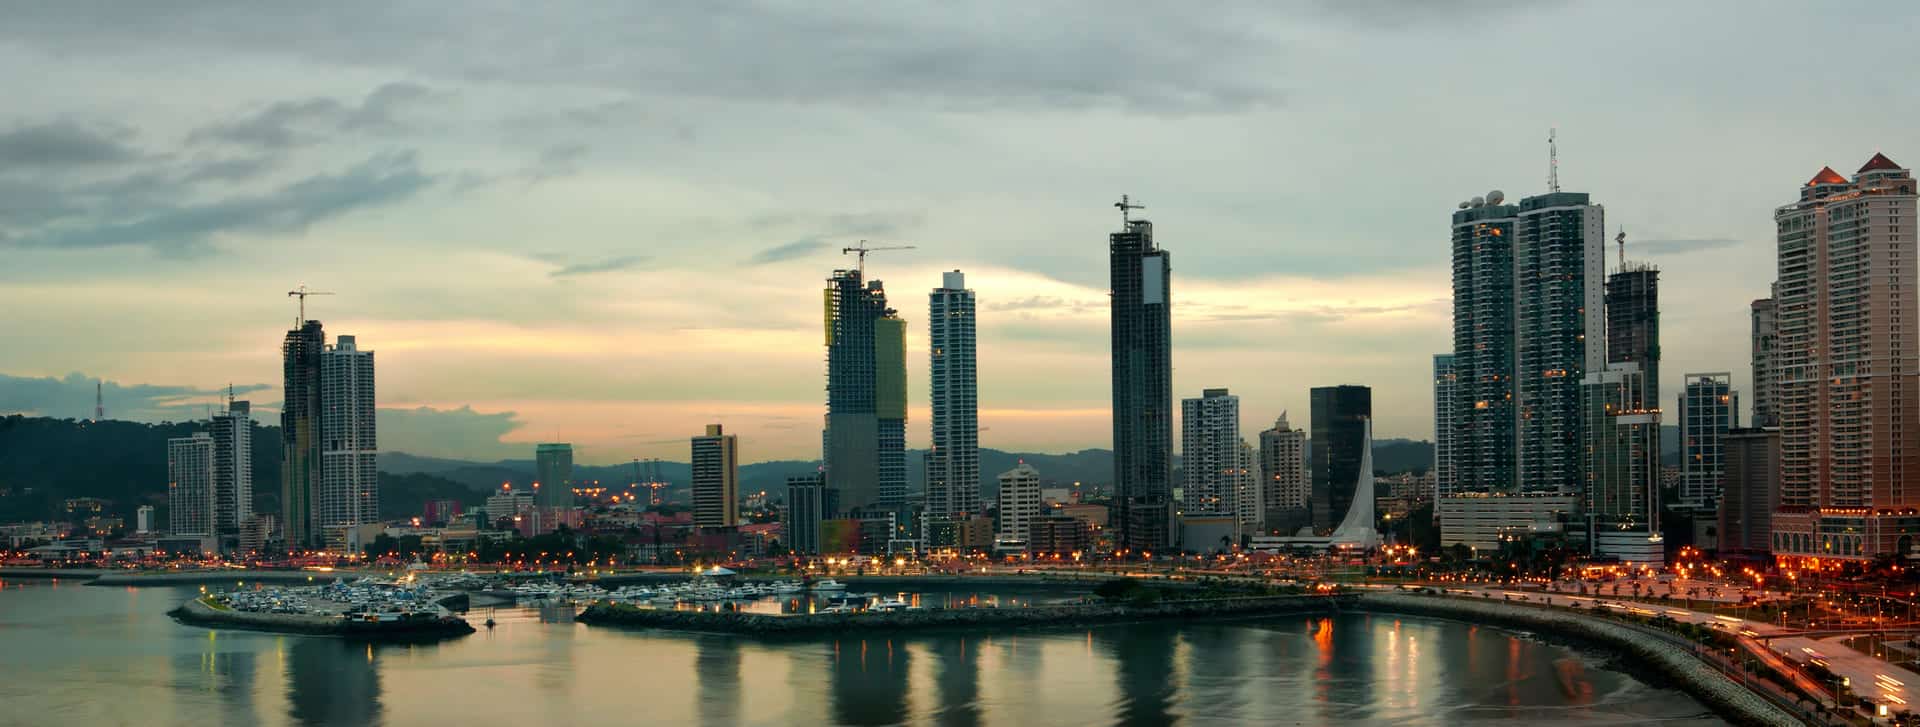 Panama vs. Kolumbien für Expats